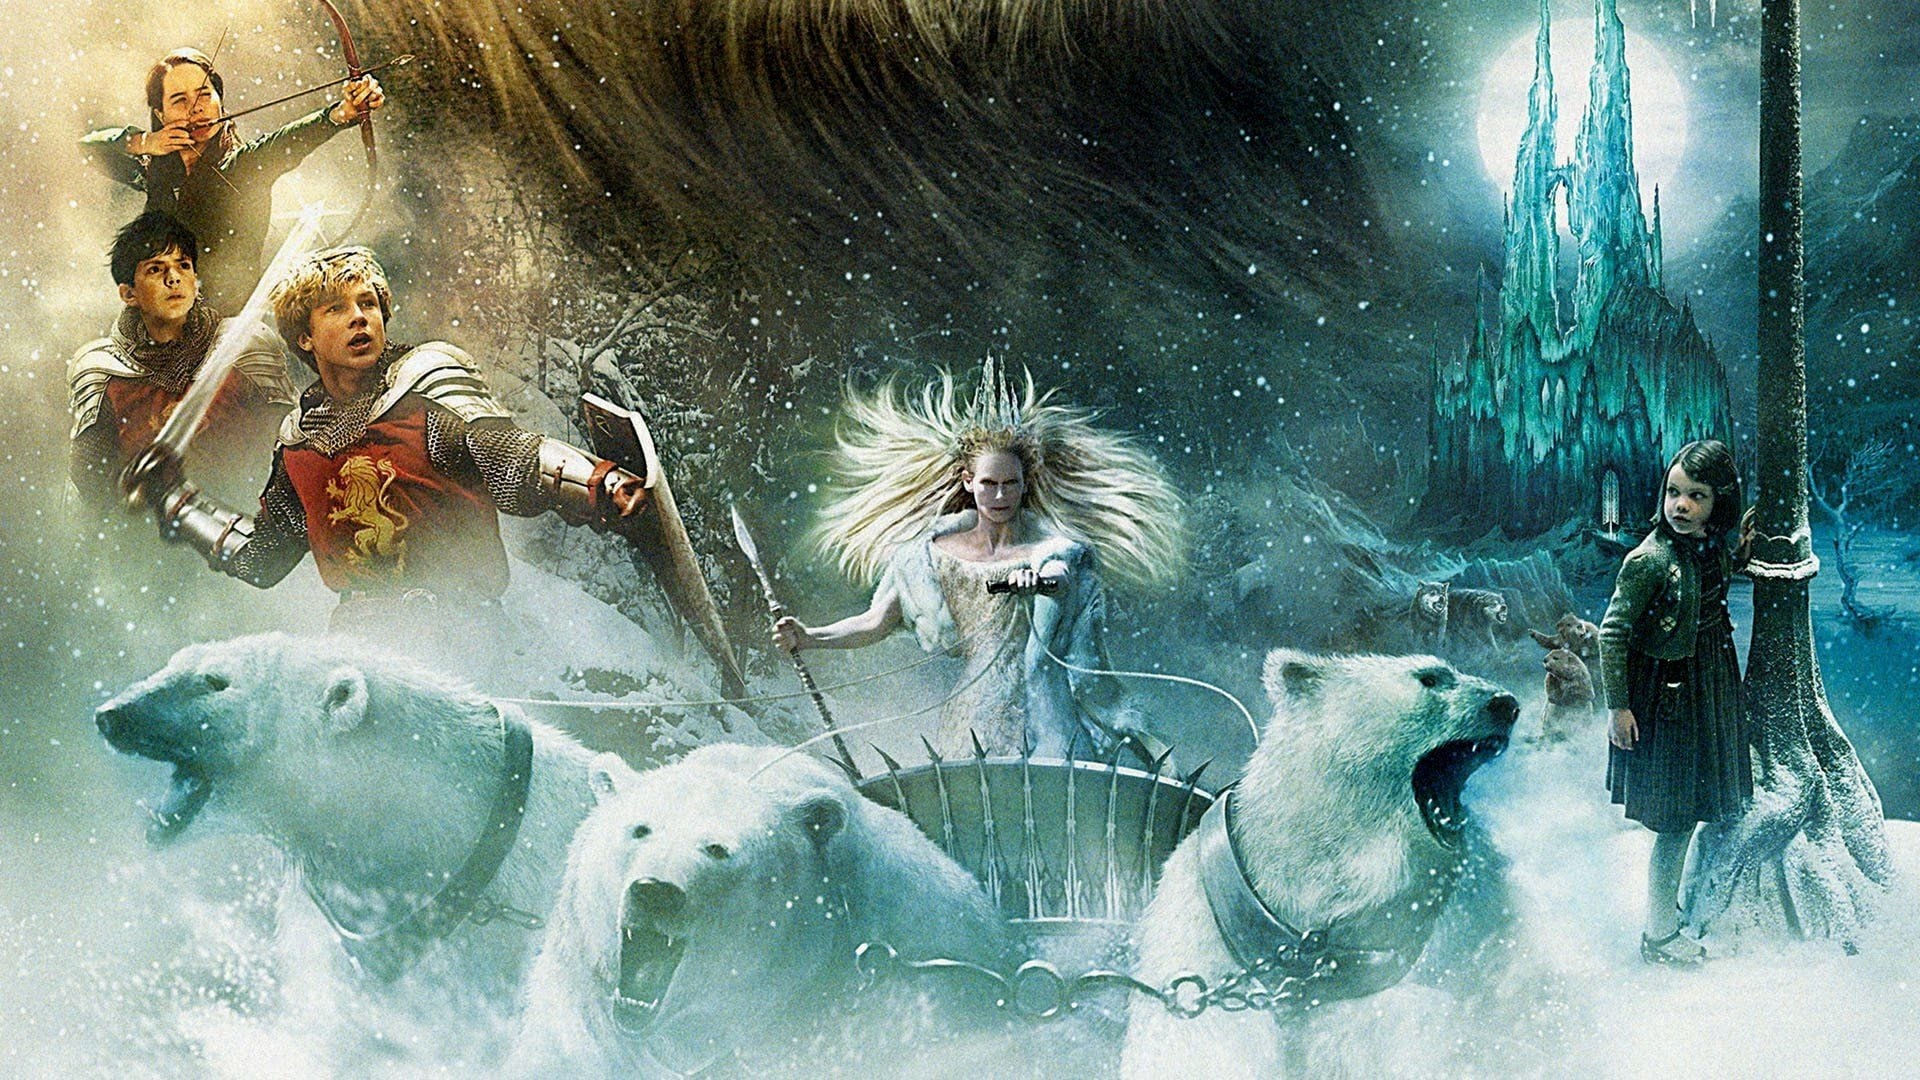 Xem Phim Biên Niên Sử Narnia: Sư Tử, Phù Thủy và Cái Tủ Áo (The Chronicles of Narnia: The Lion, the Witch and the Wardrobe)